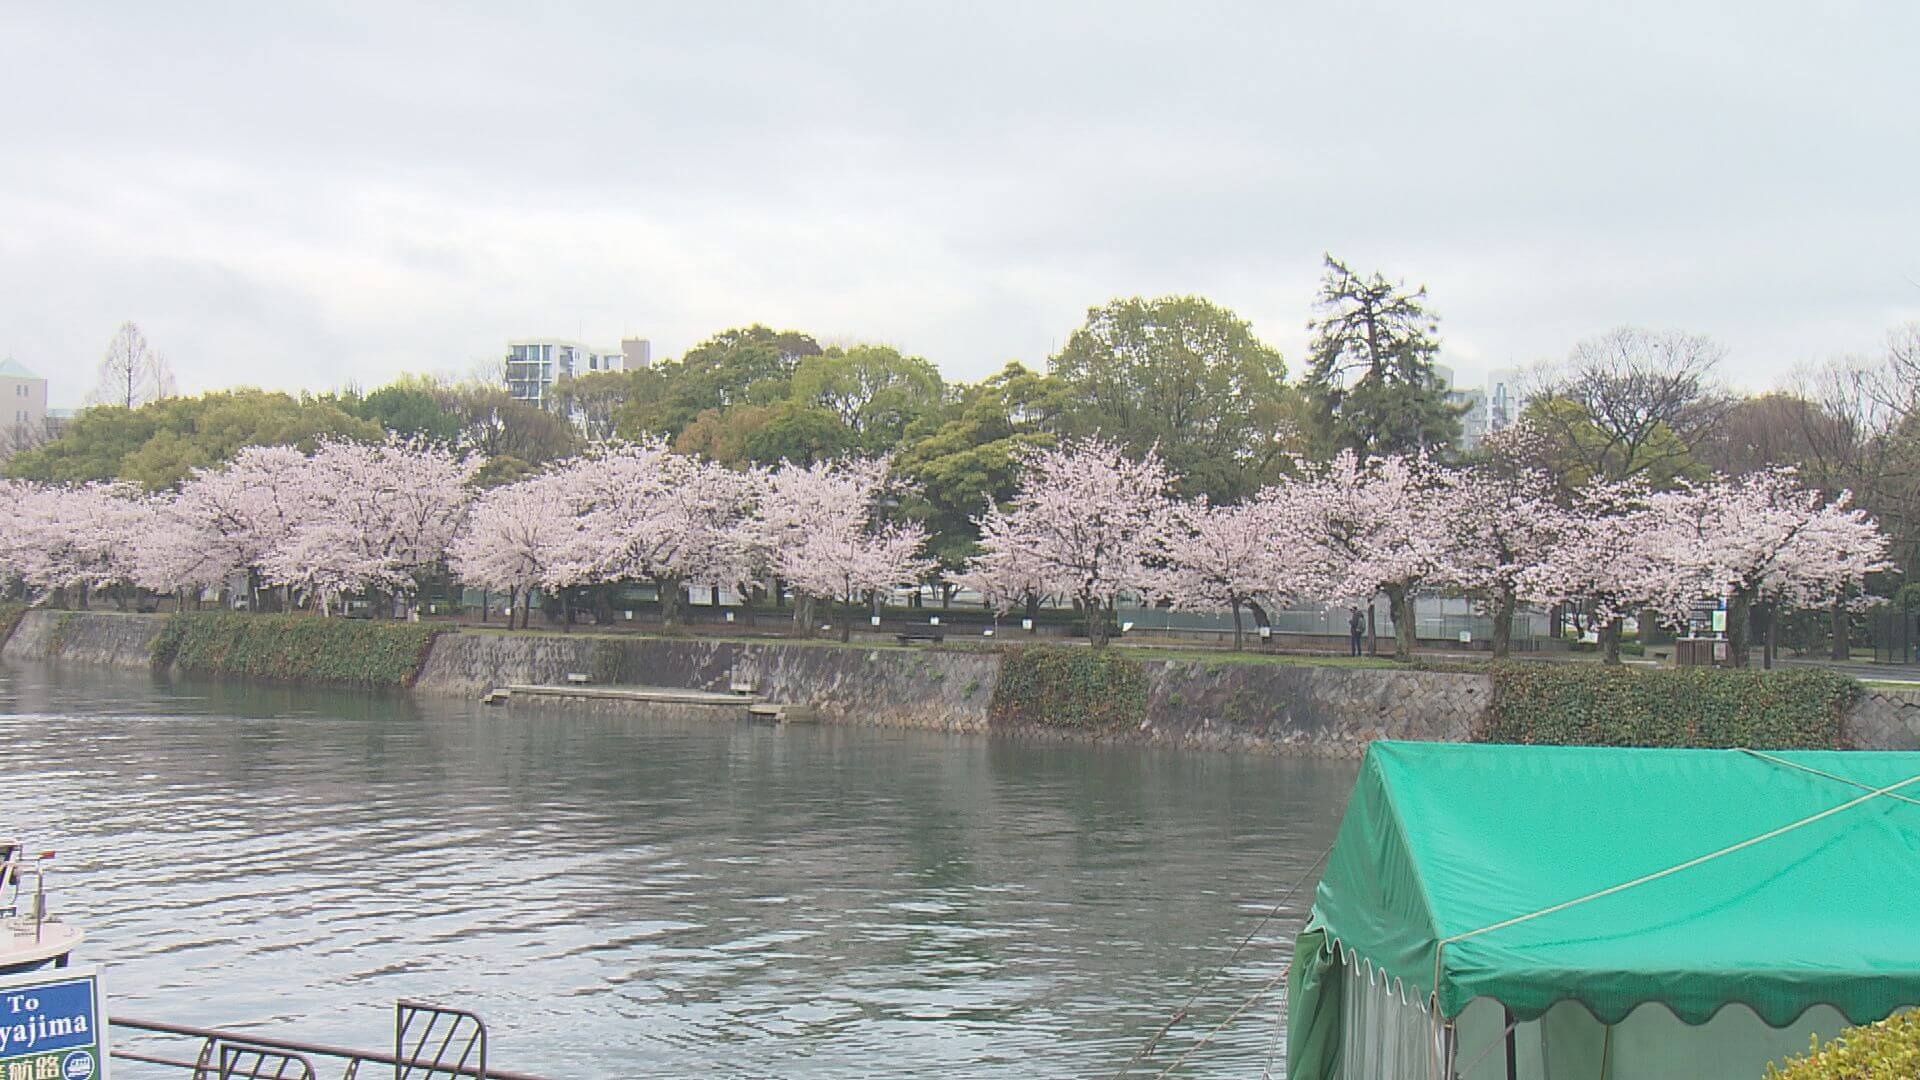 Caffe Pontから見える桜並木。毎年この時期に来店されるお客様もいらっしゃるんだとか。